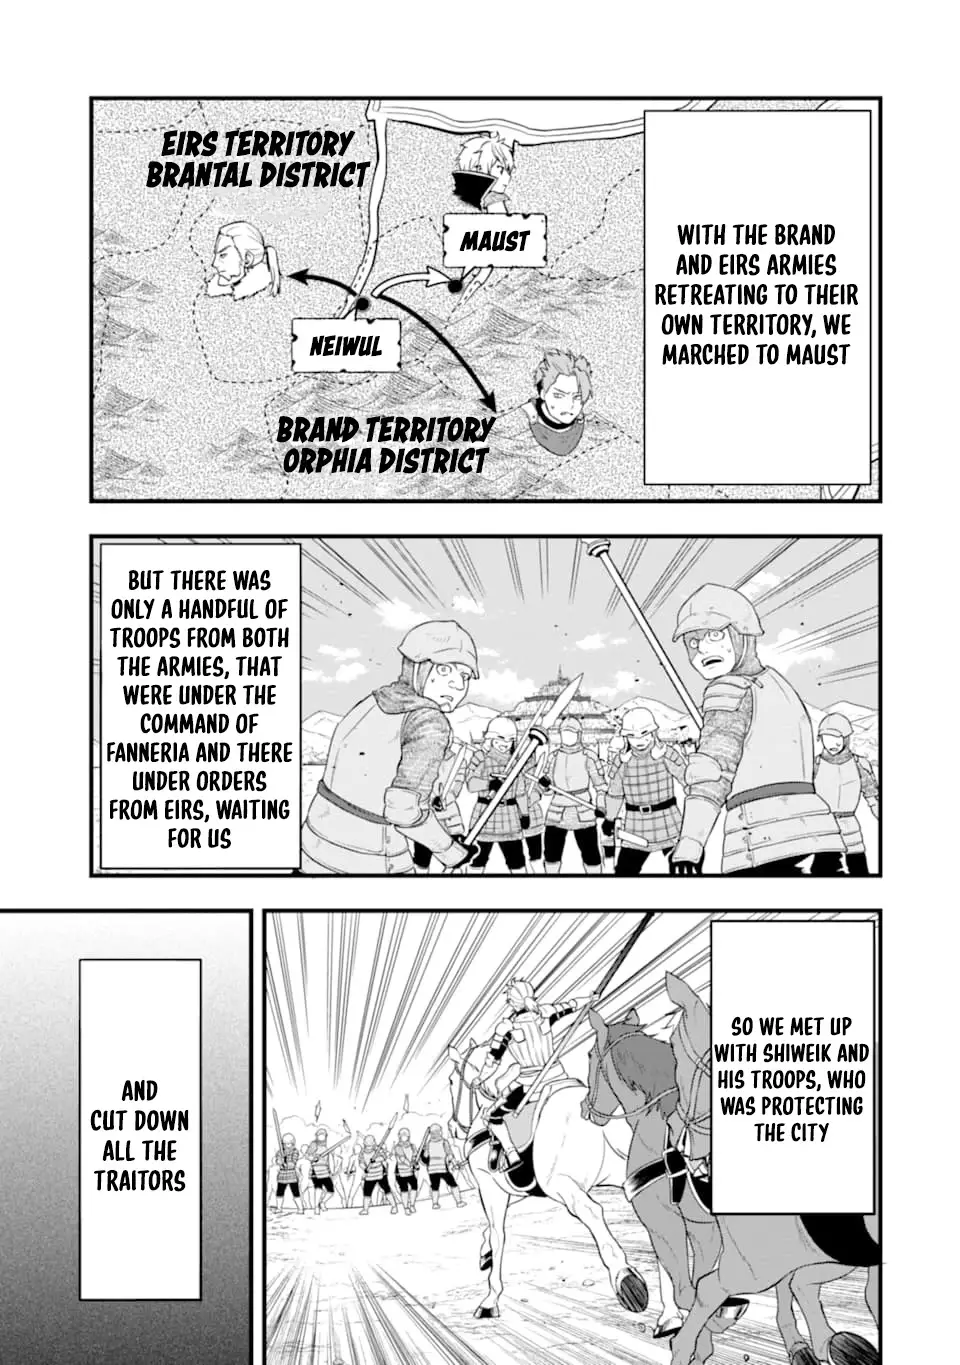 Mysterious Job Called Oda Nobunaga - 30 page 1-5e2bb8e4